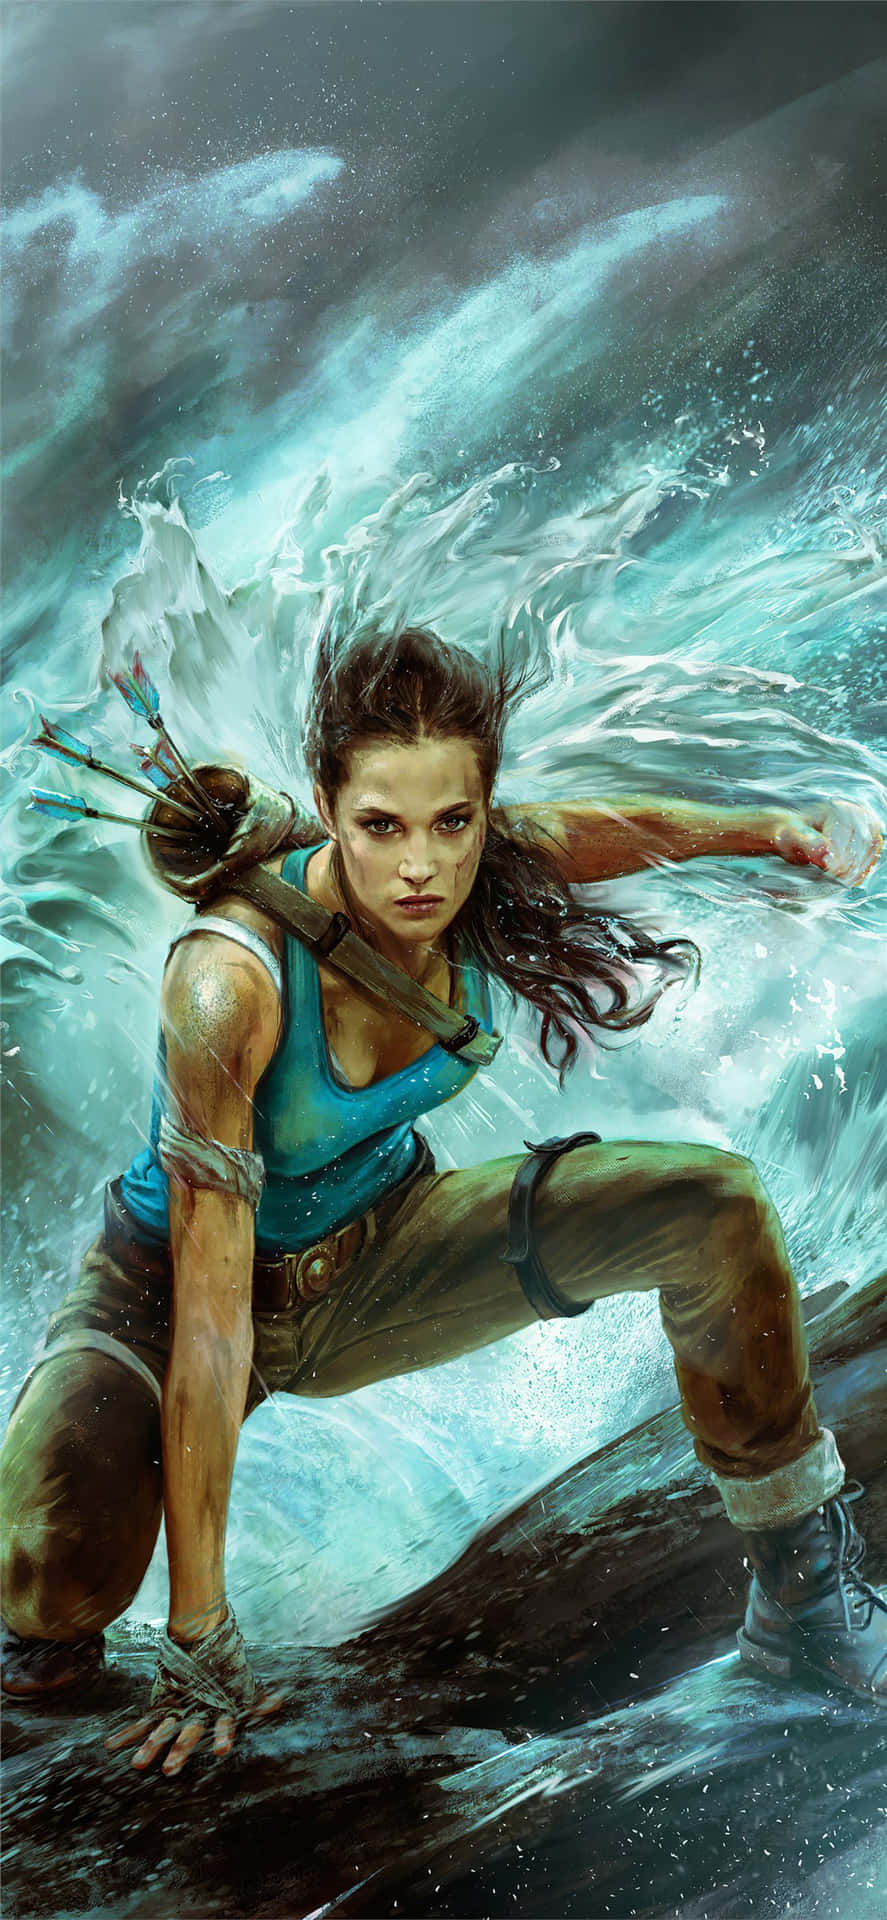 Upplevden Mest Intensiva Och Engagerande Spelupplevelsen Med Pixel 3 Och Shadow Of The Tomb Raider.